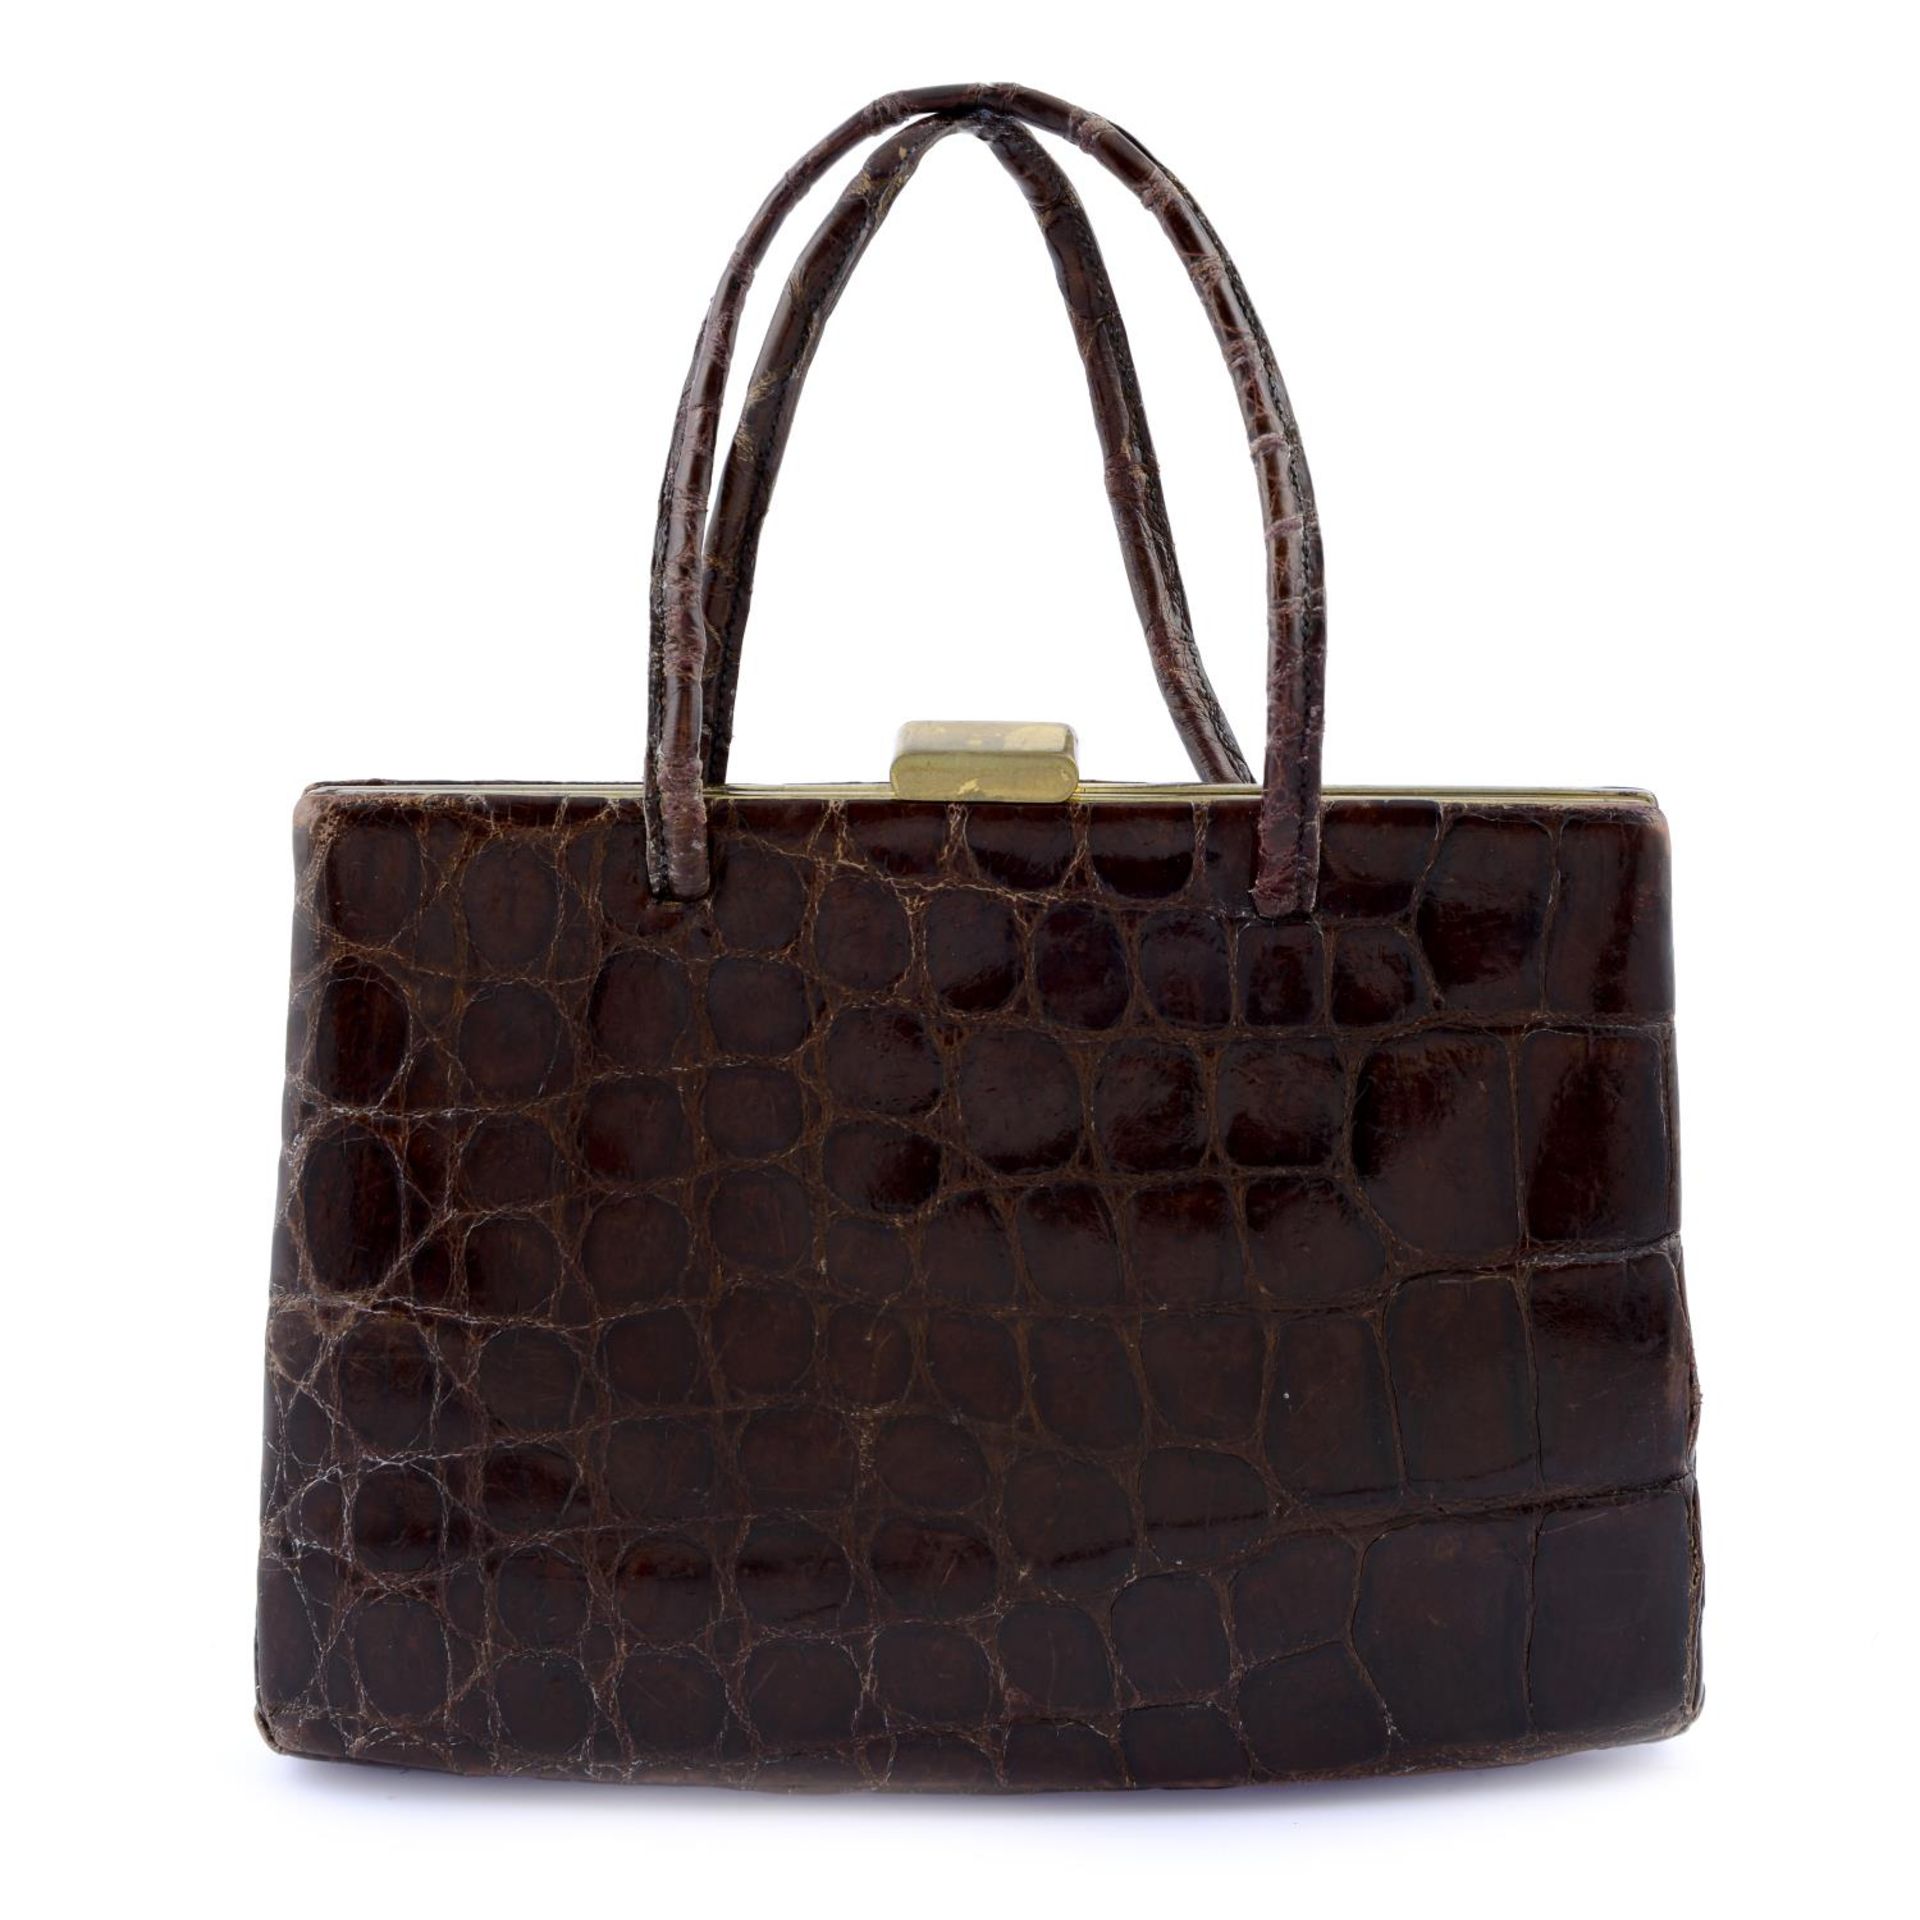 ASPREY - a vintage crocodile skin handbag.